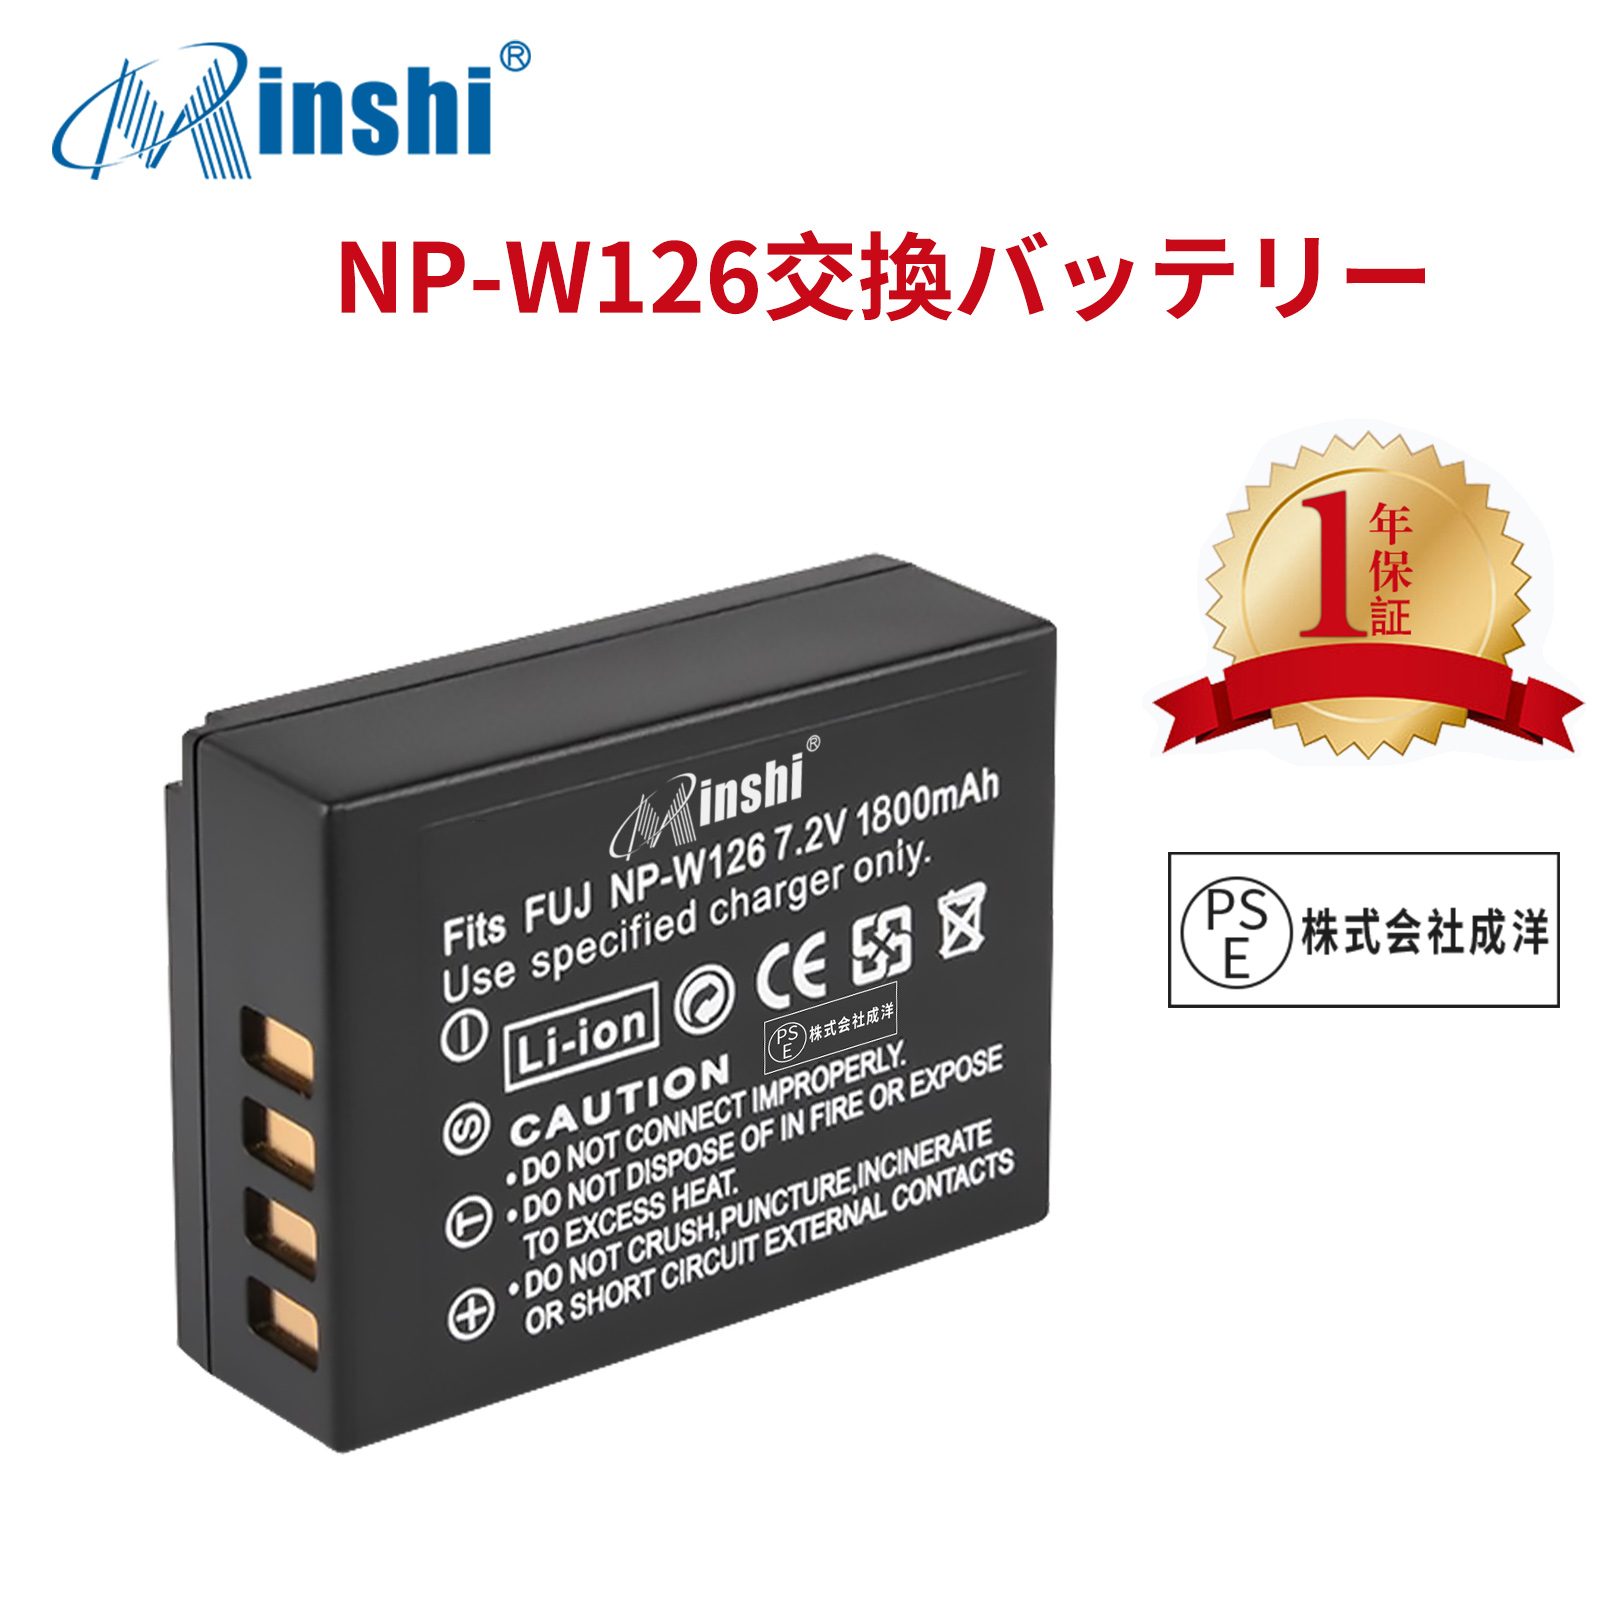 【1年保証】minshi FUJIFILM X-A5 NP-W126 【1800mAh 7.2V】 NP-W126 NP-W126S高品質 NP-W126S NP-W126互換バッテリー